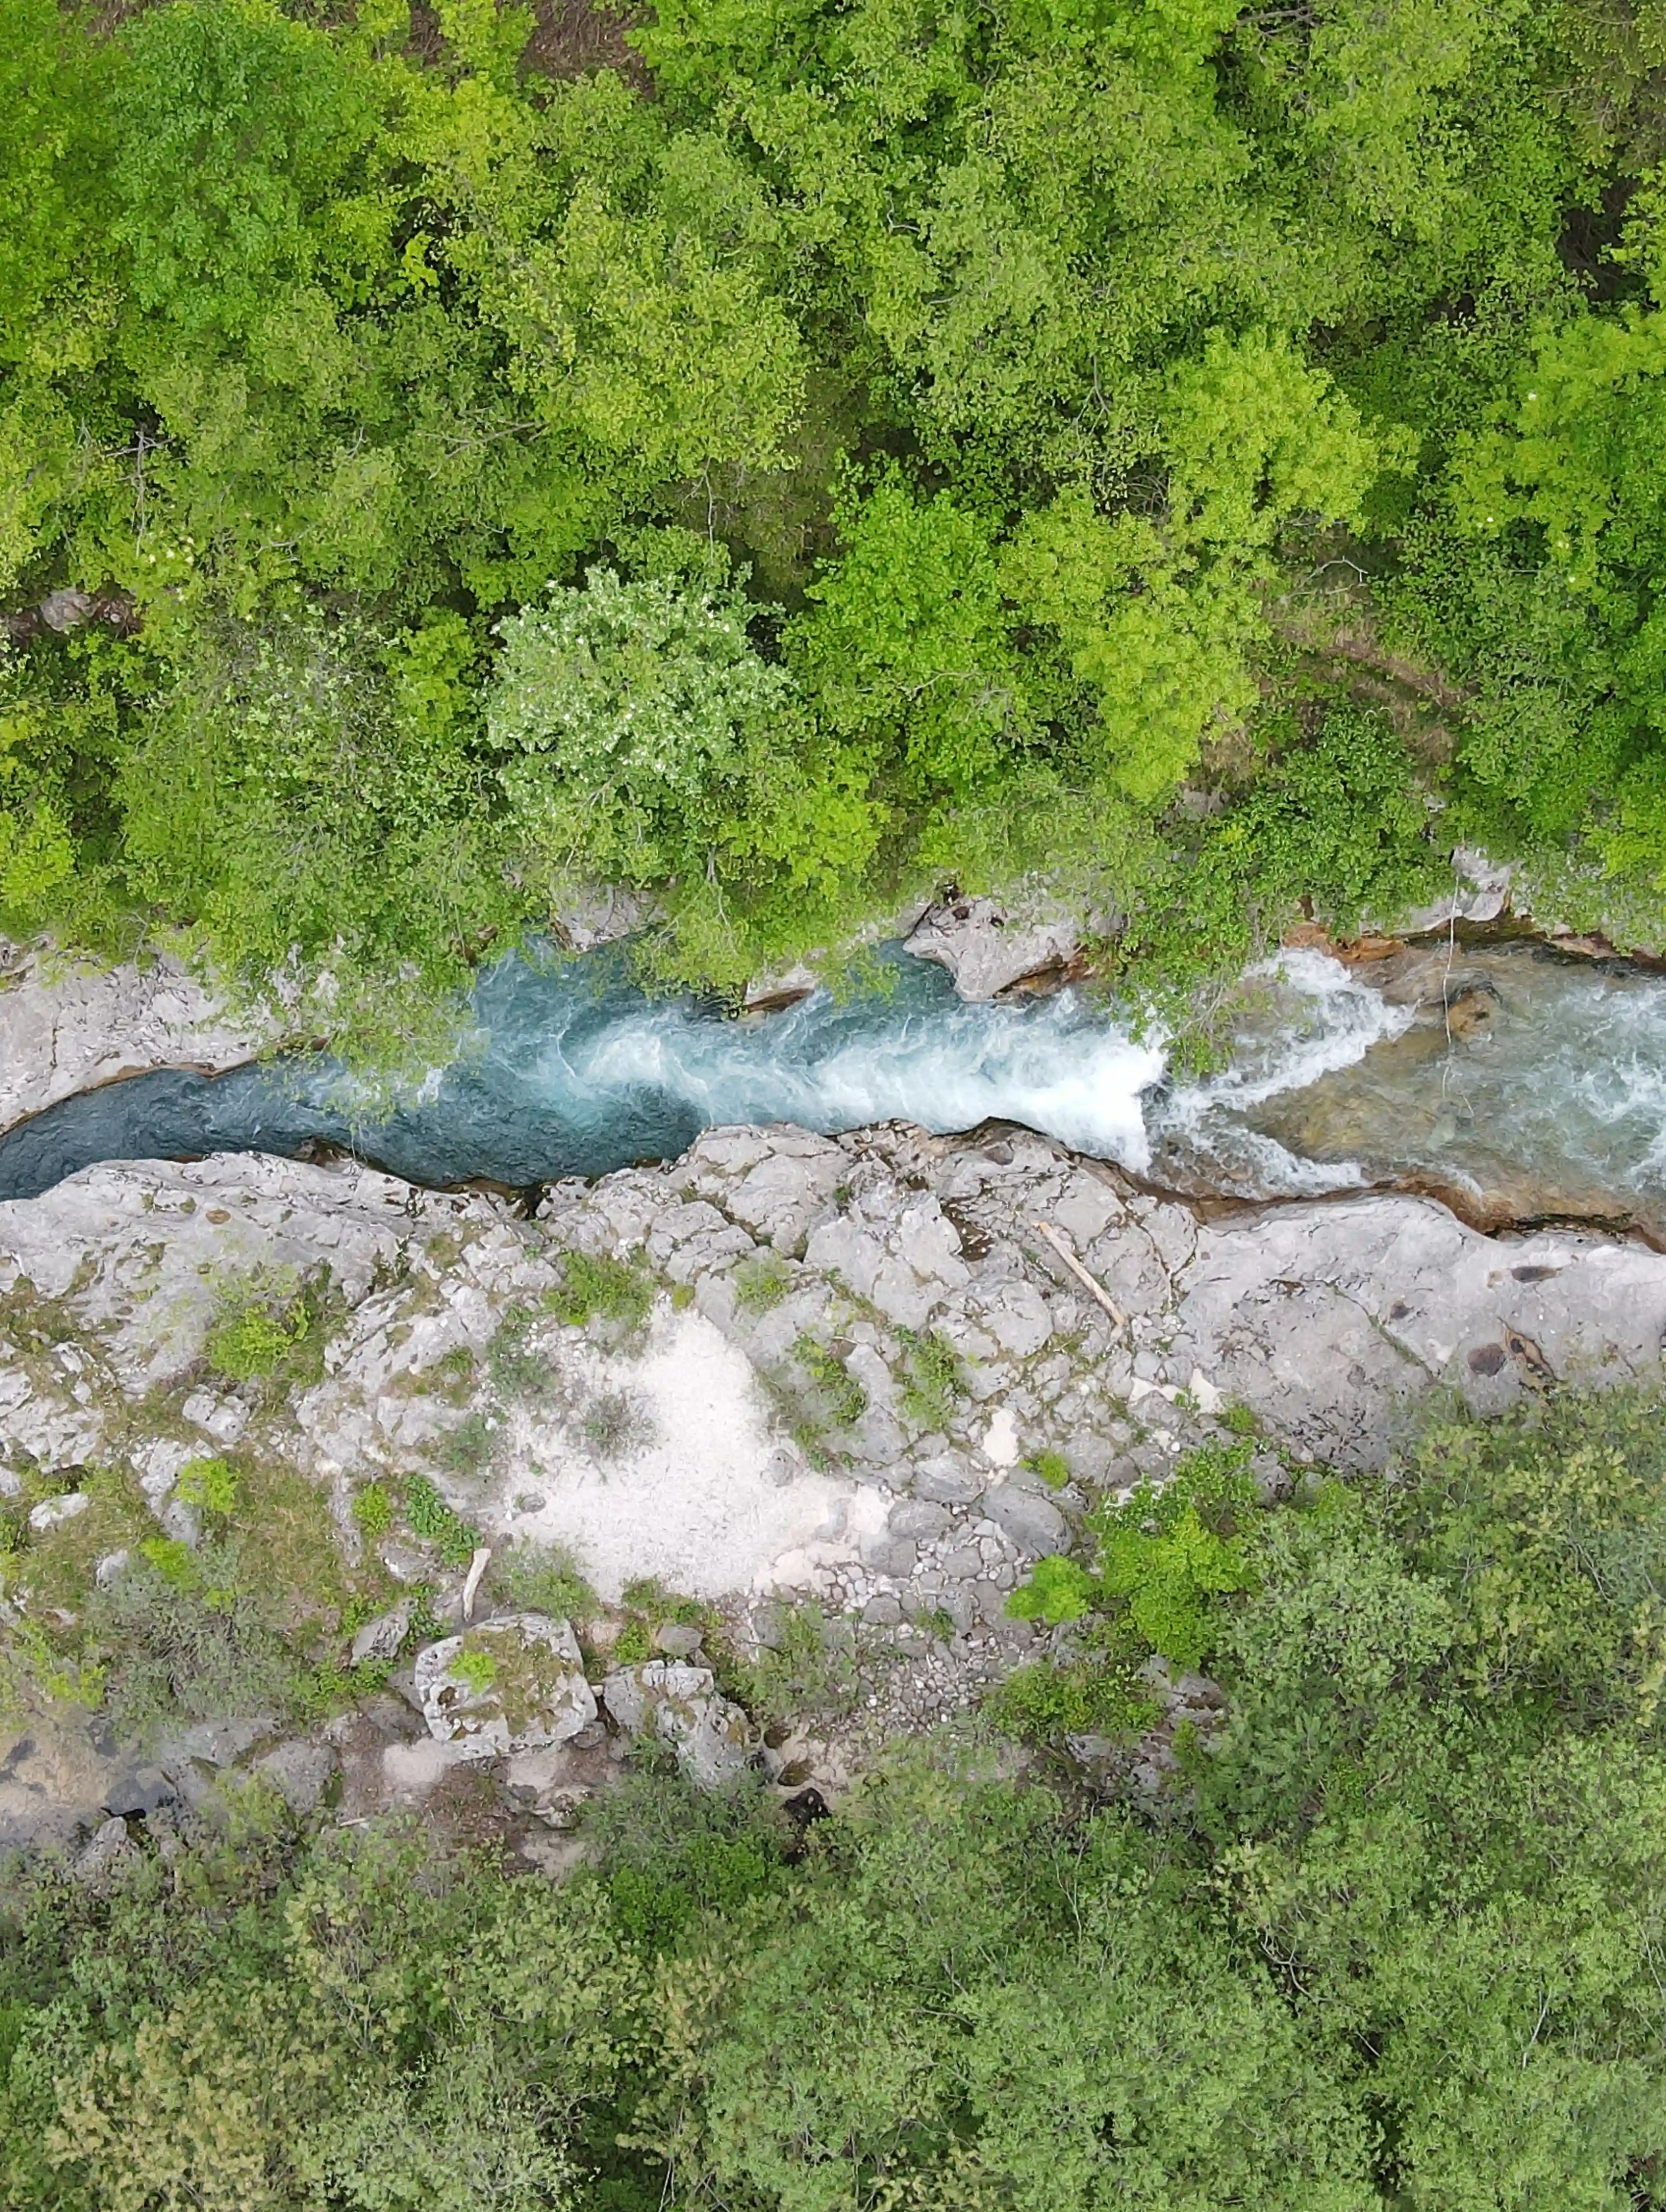 Koritnica river gorge